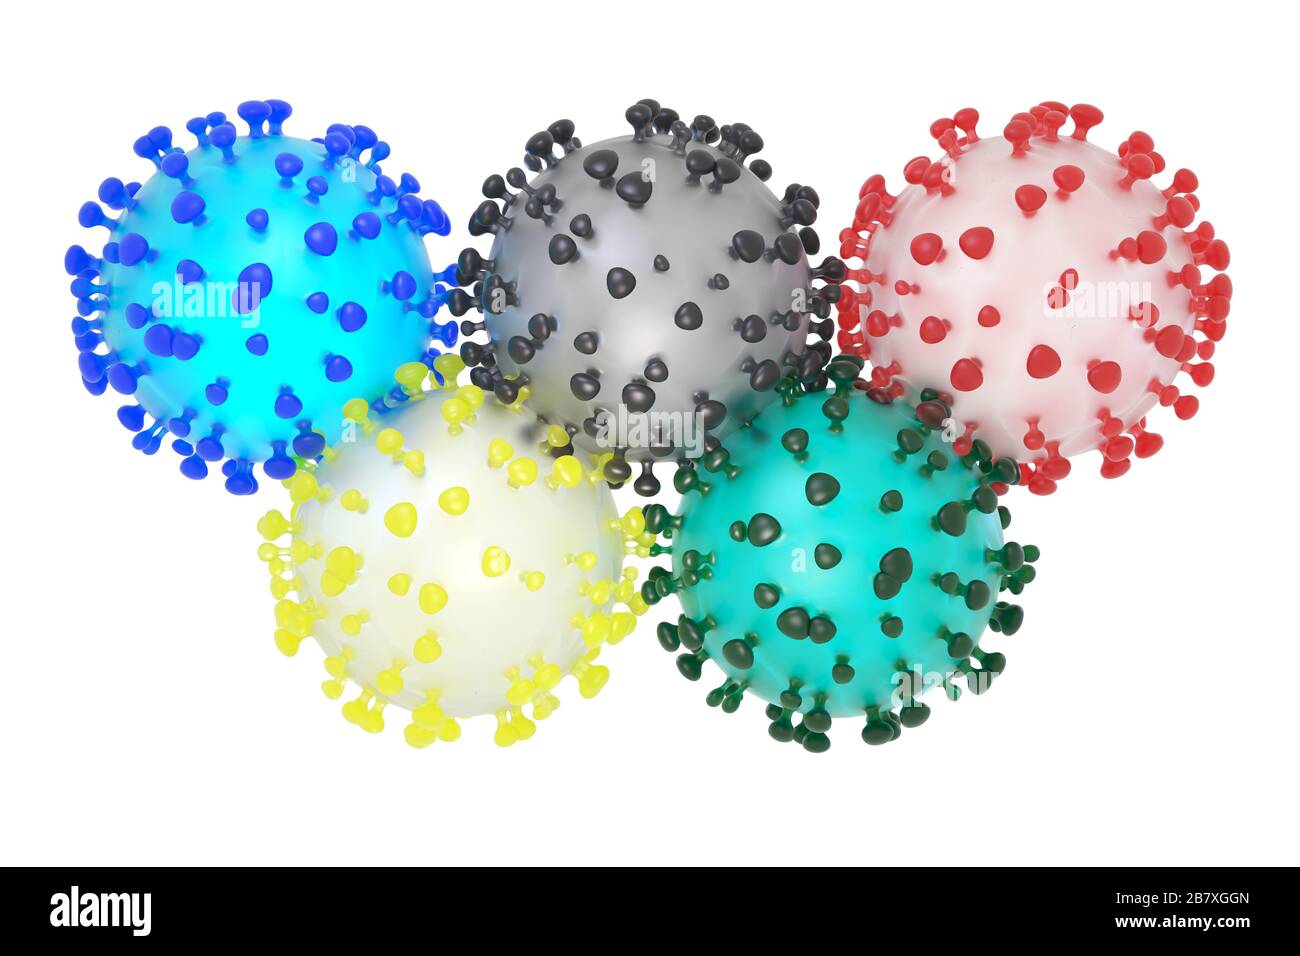 Ilustración 3D simbólica del coronavirus sars-cov-2 y los anillos olímpicos Foto de stock